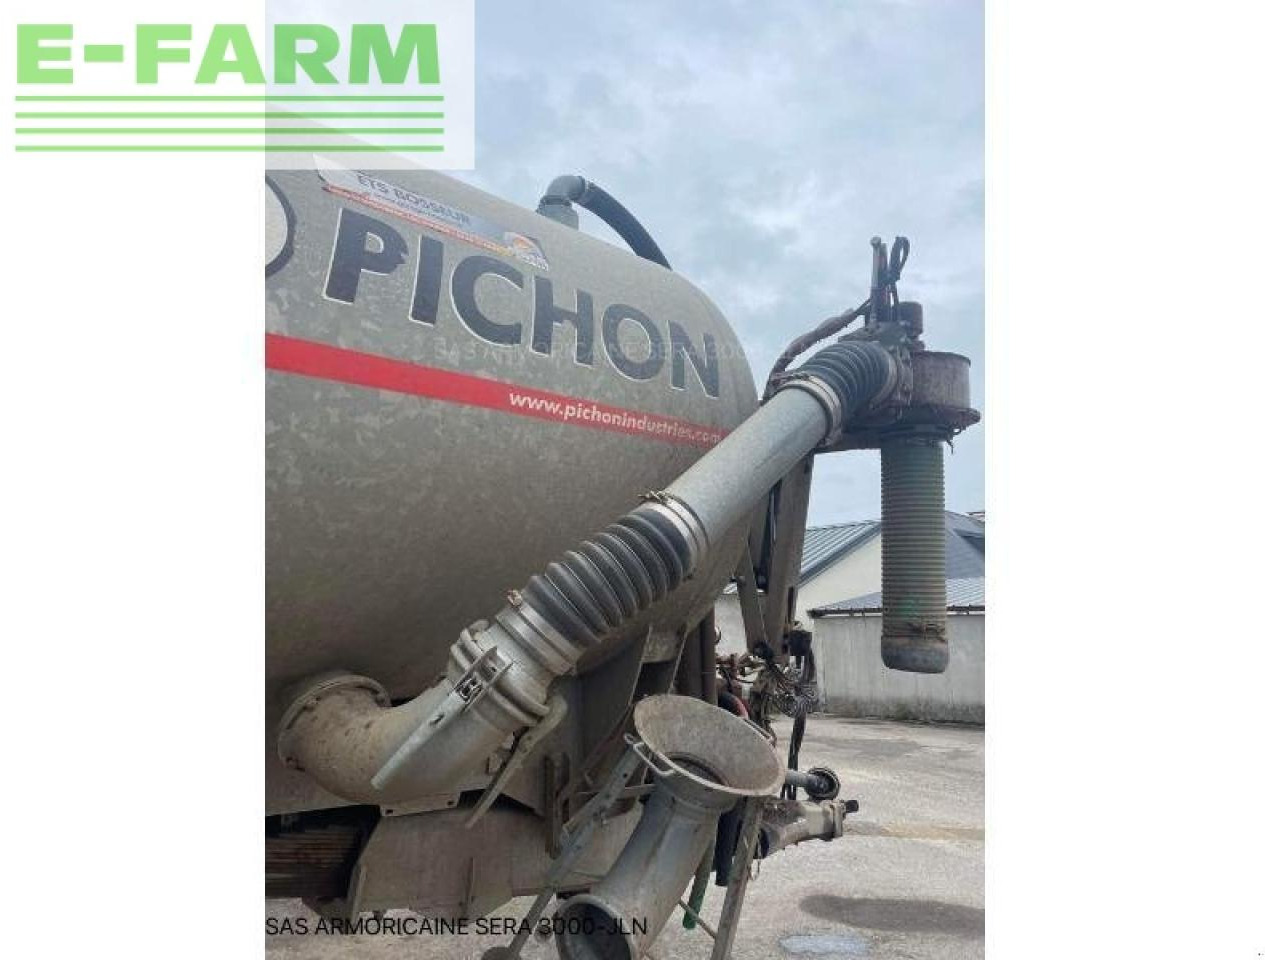 Farm tractor Pichon tci 18500: picture 5